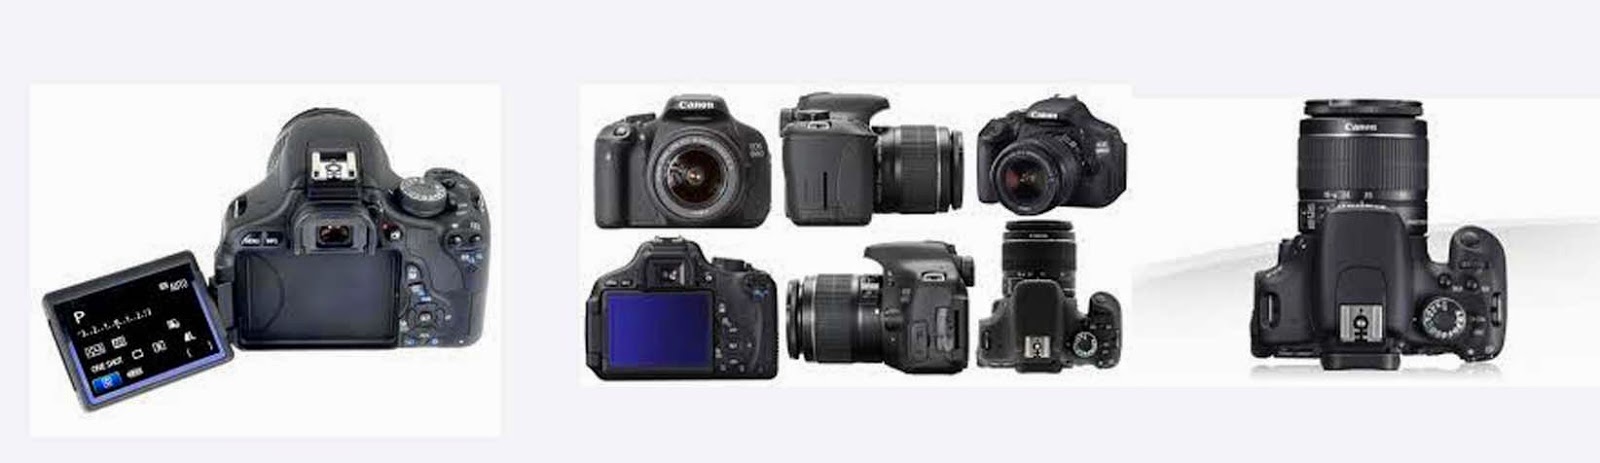 oktagon,toko kamera mangga dua,toko bagus,toko aneka,toko kamera aneka pasar baru,Toko kamera pasar baru,